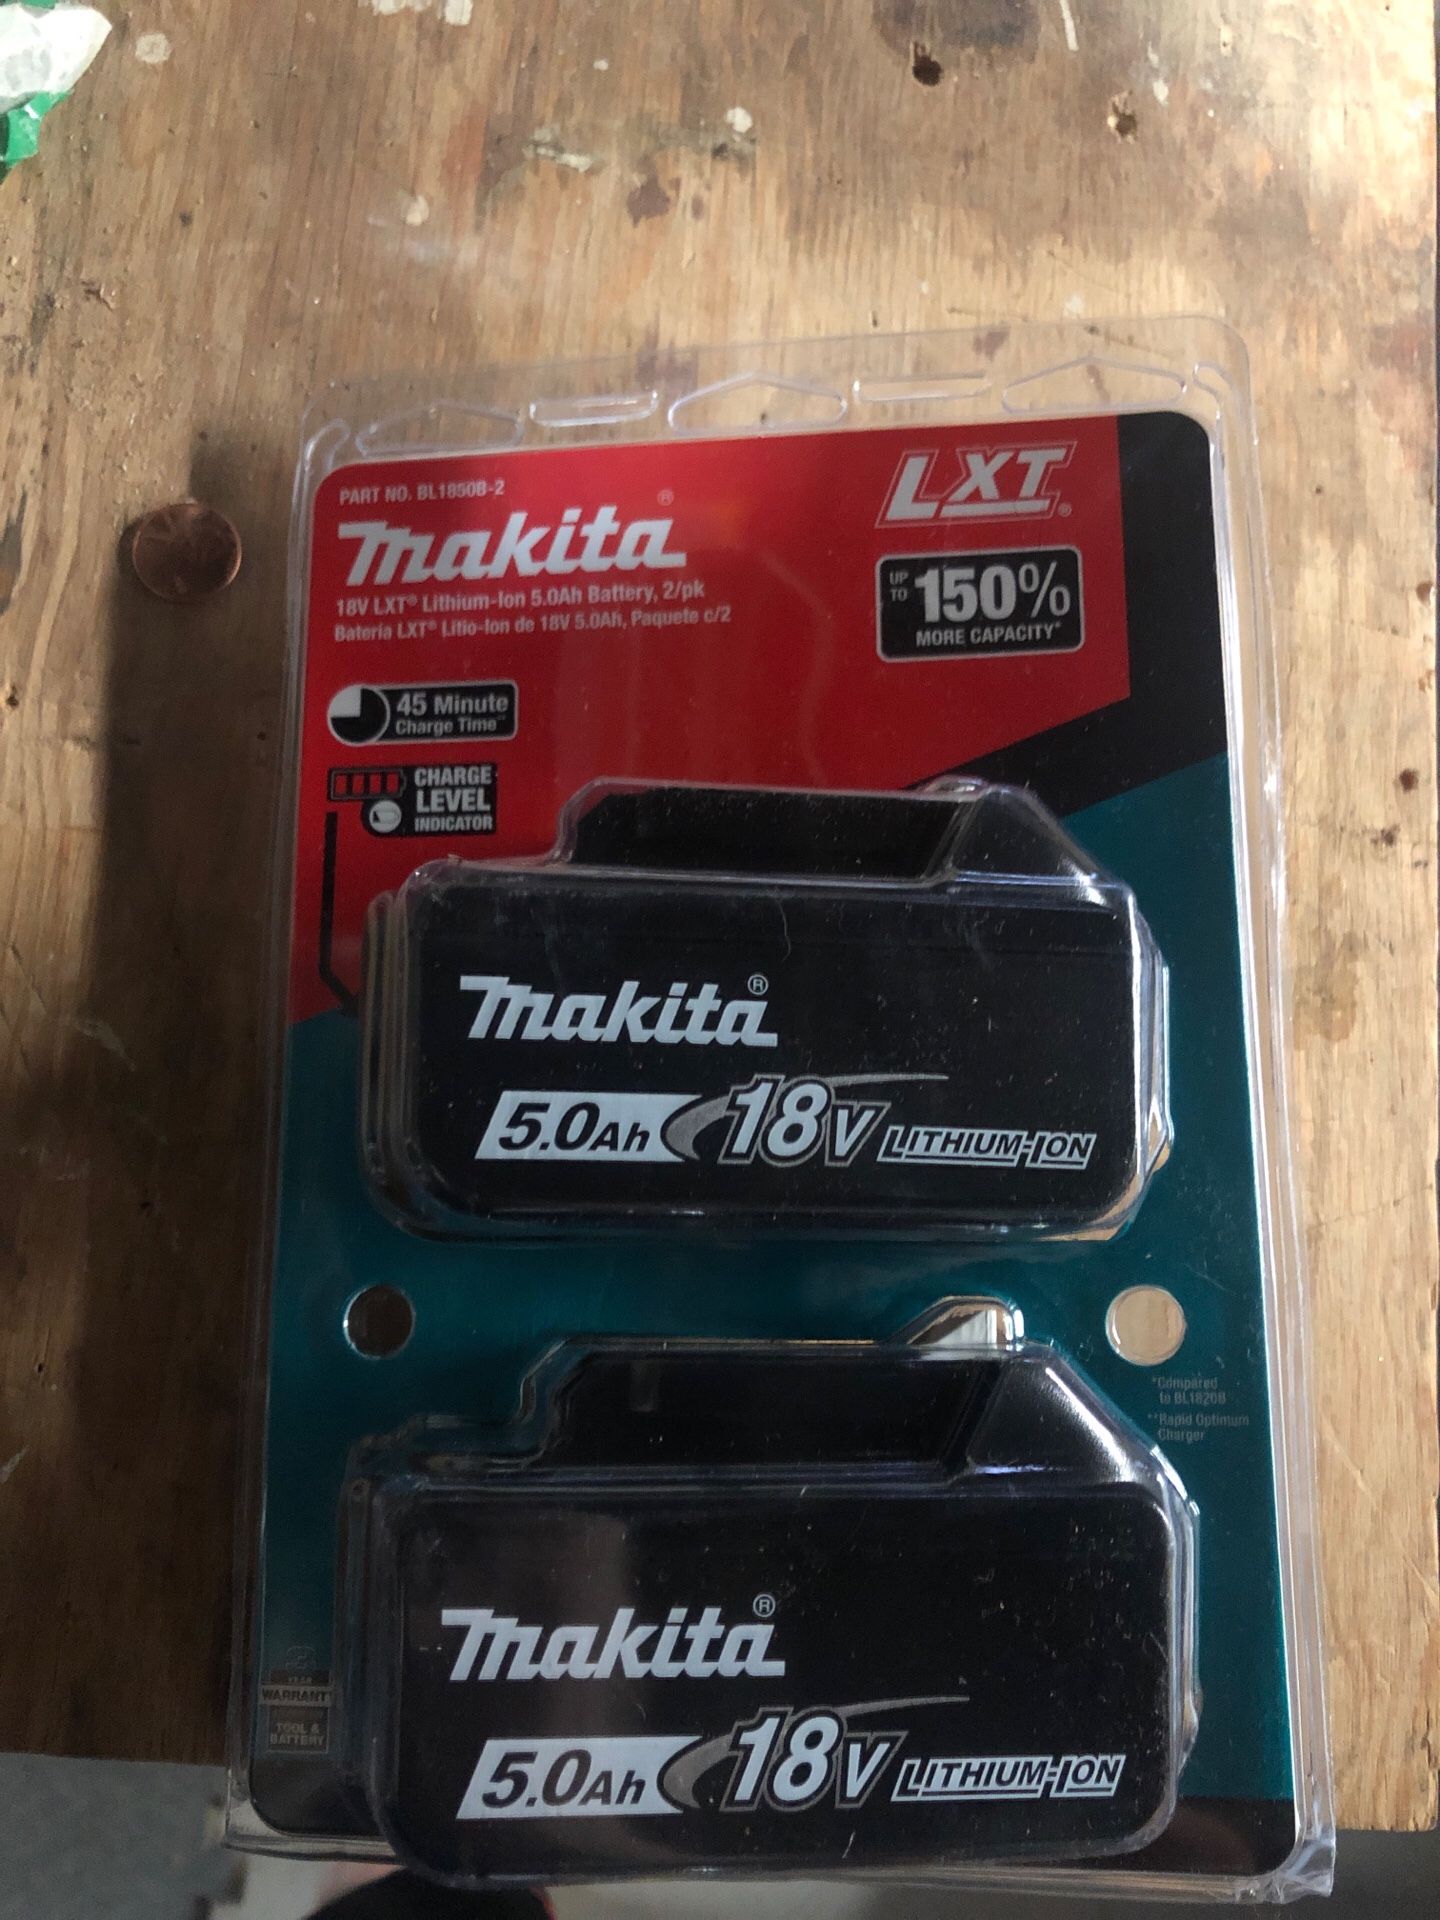 Makita 18v 5.0 ah battery 2 pack